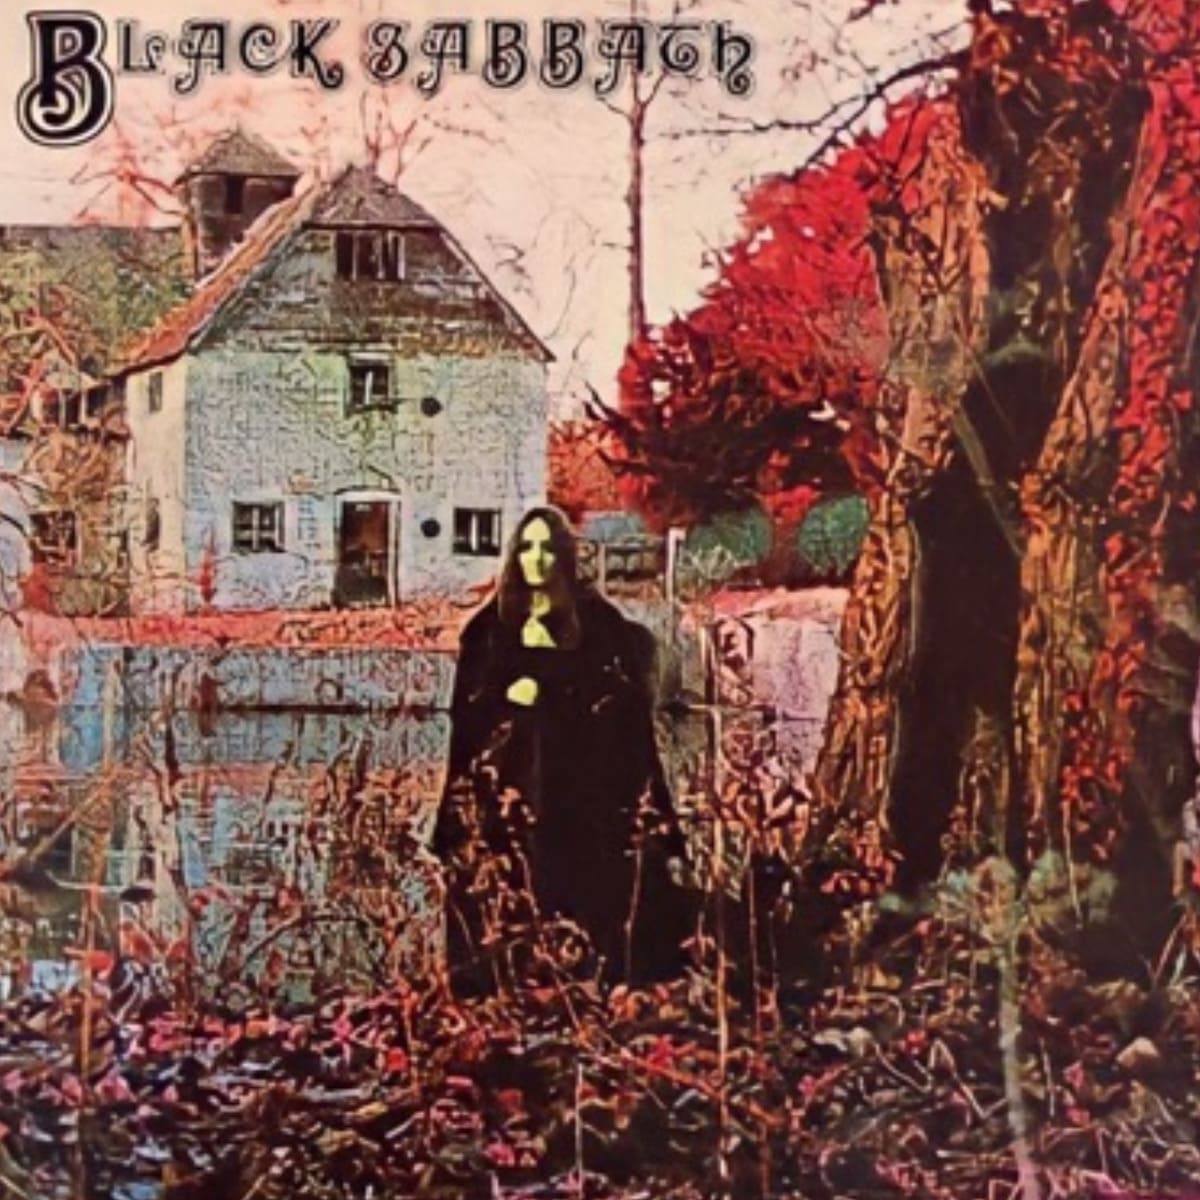 Portada del álbum "Black Sabbath" de la banda Black Sabbath